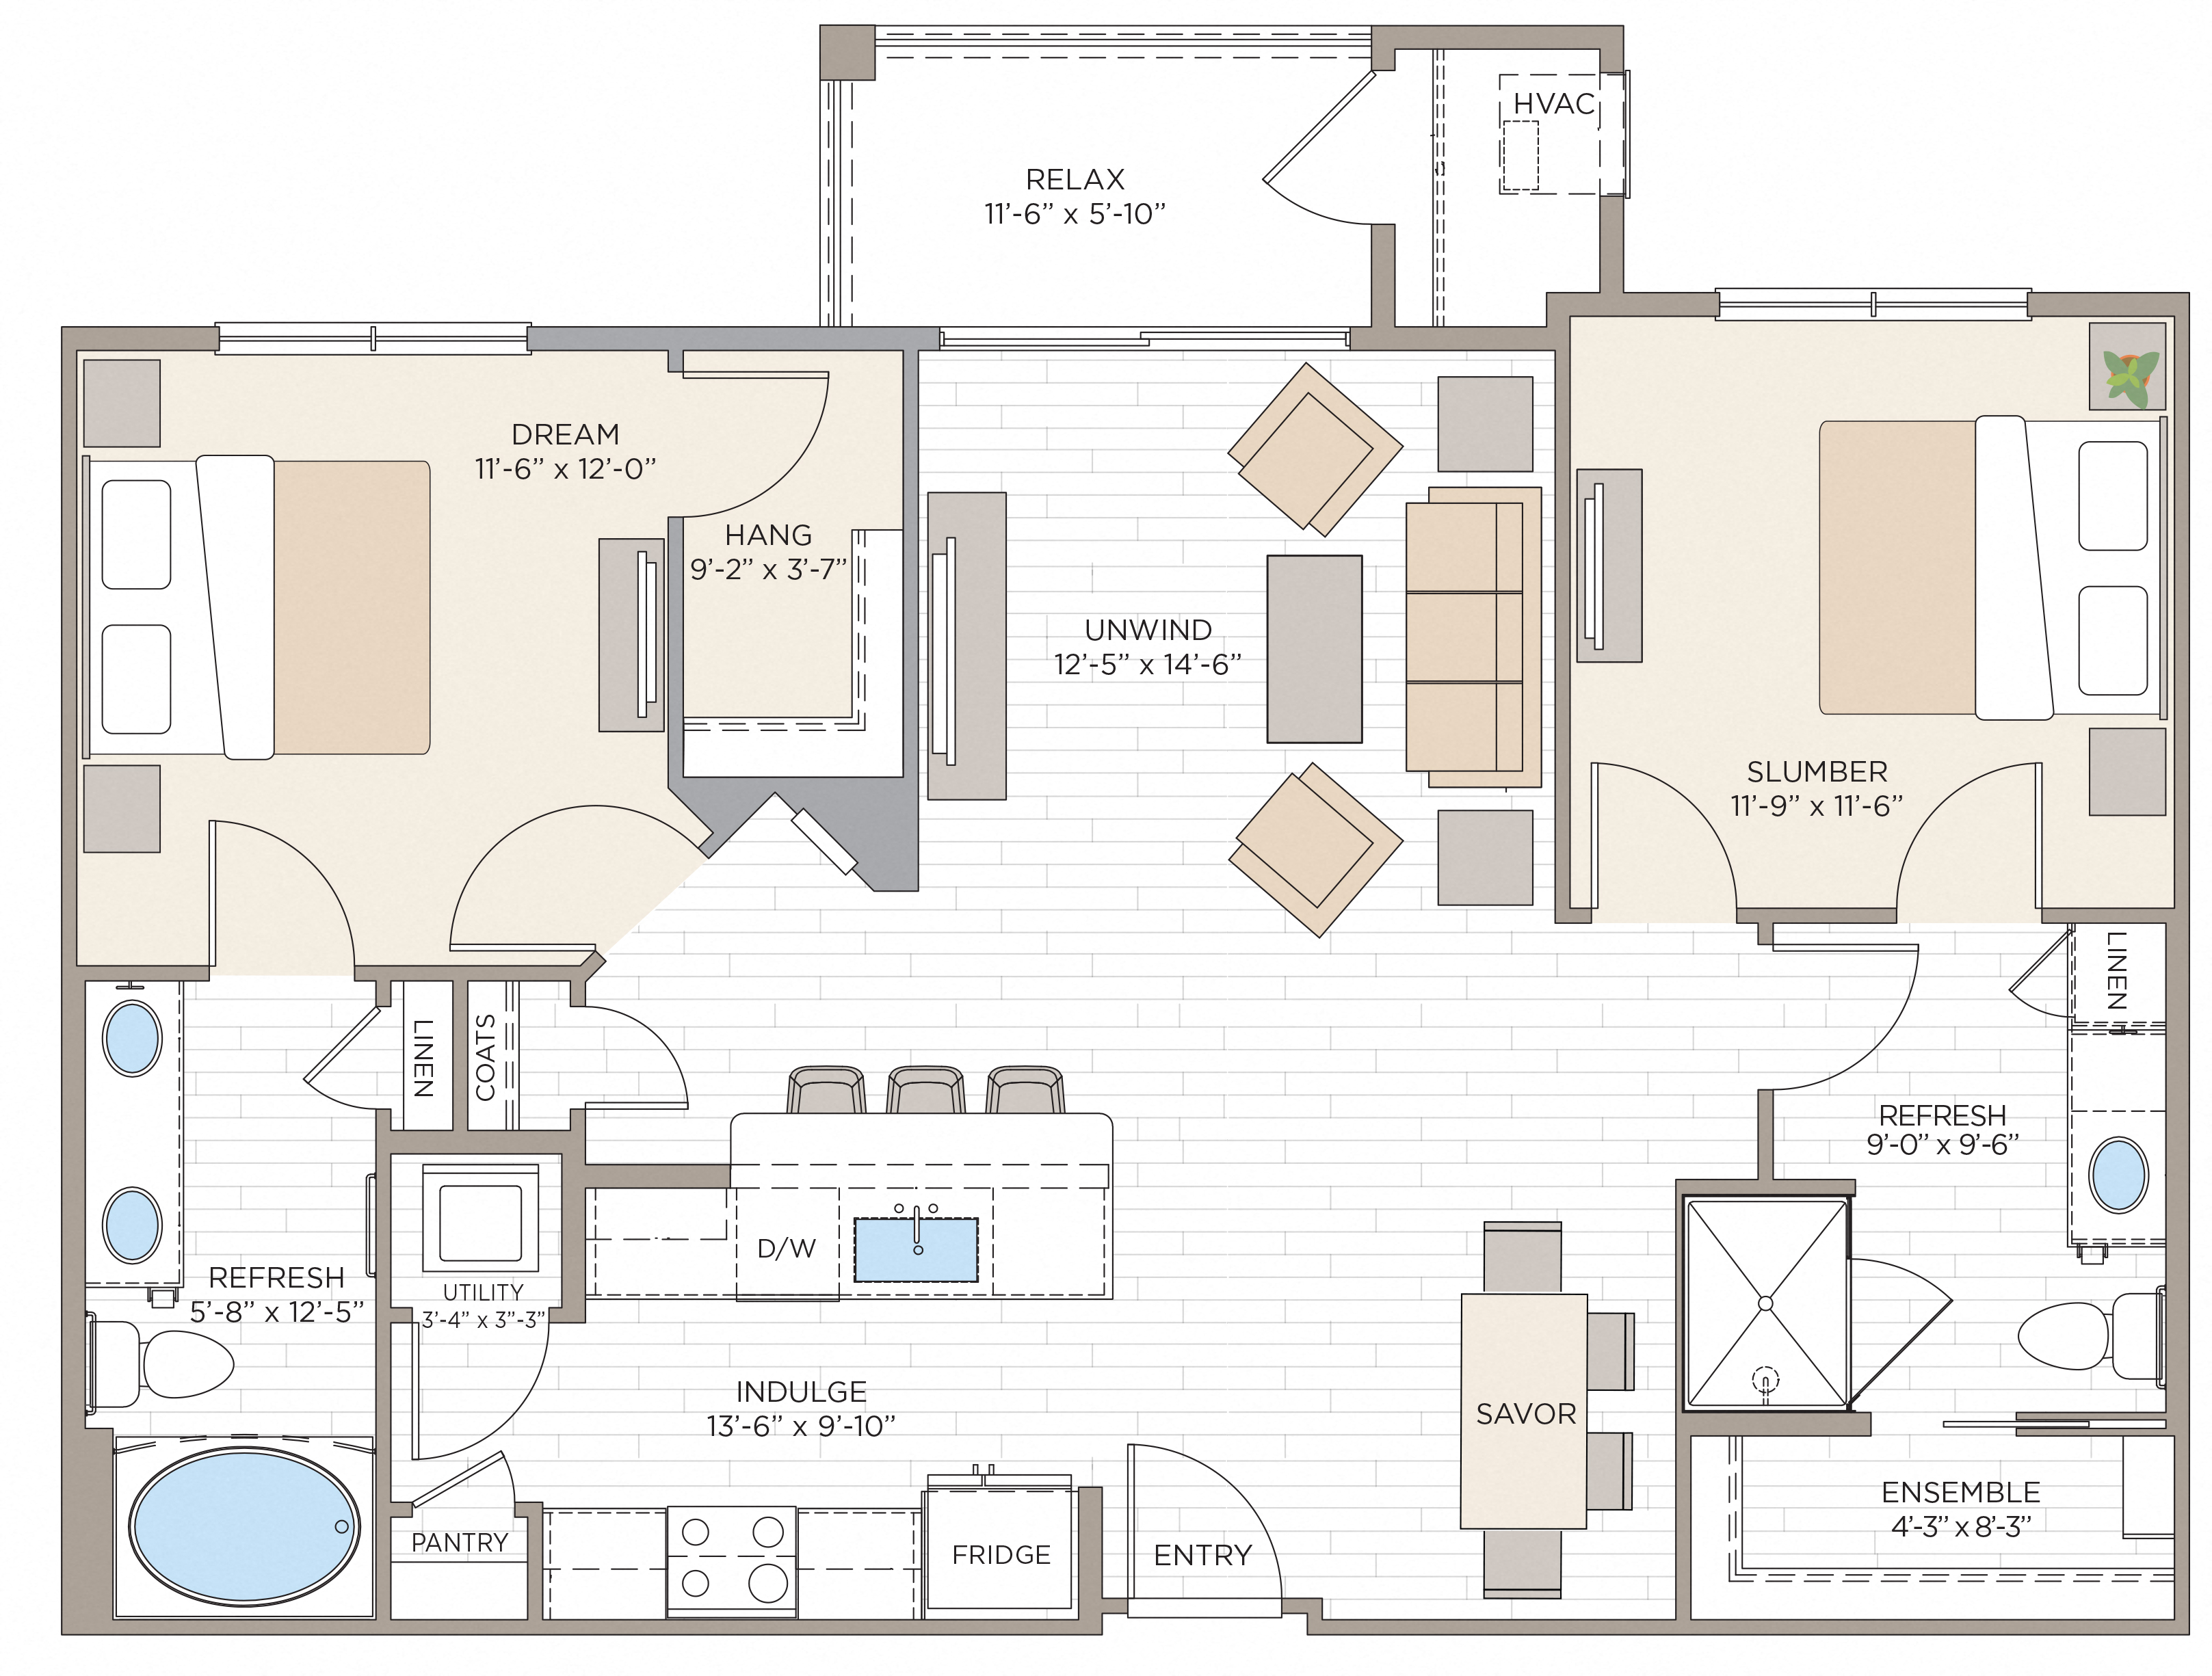 Floorplan for Apartment #08217, 2 bedroom unit at Halstead Maynard Crossing